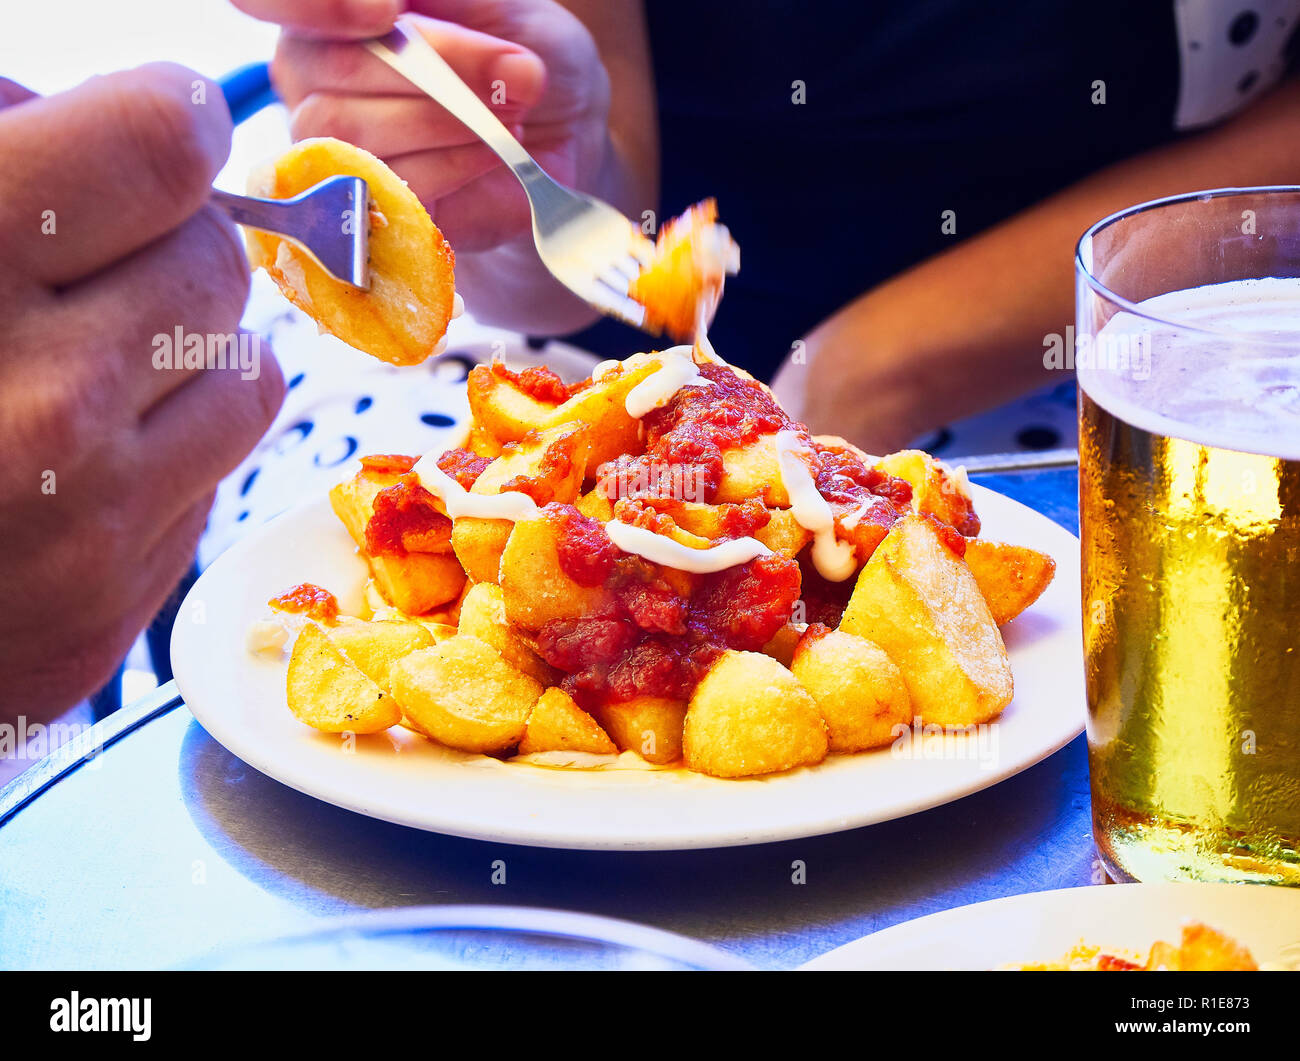 Les gens de goût une partie de patatas bravas sur une table métallique. Frites garnies de sauce épicée, l'un des plus communs des tapas espagnoles. Banque D'Images